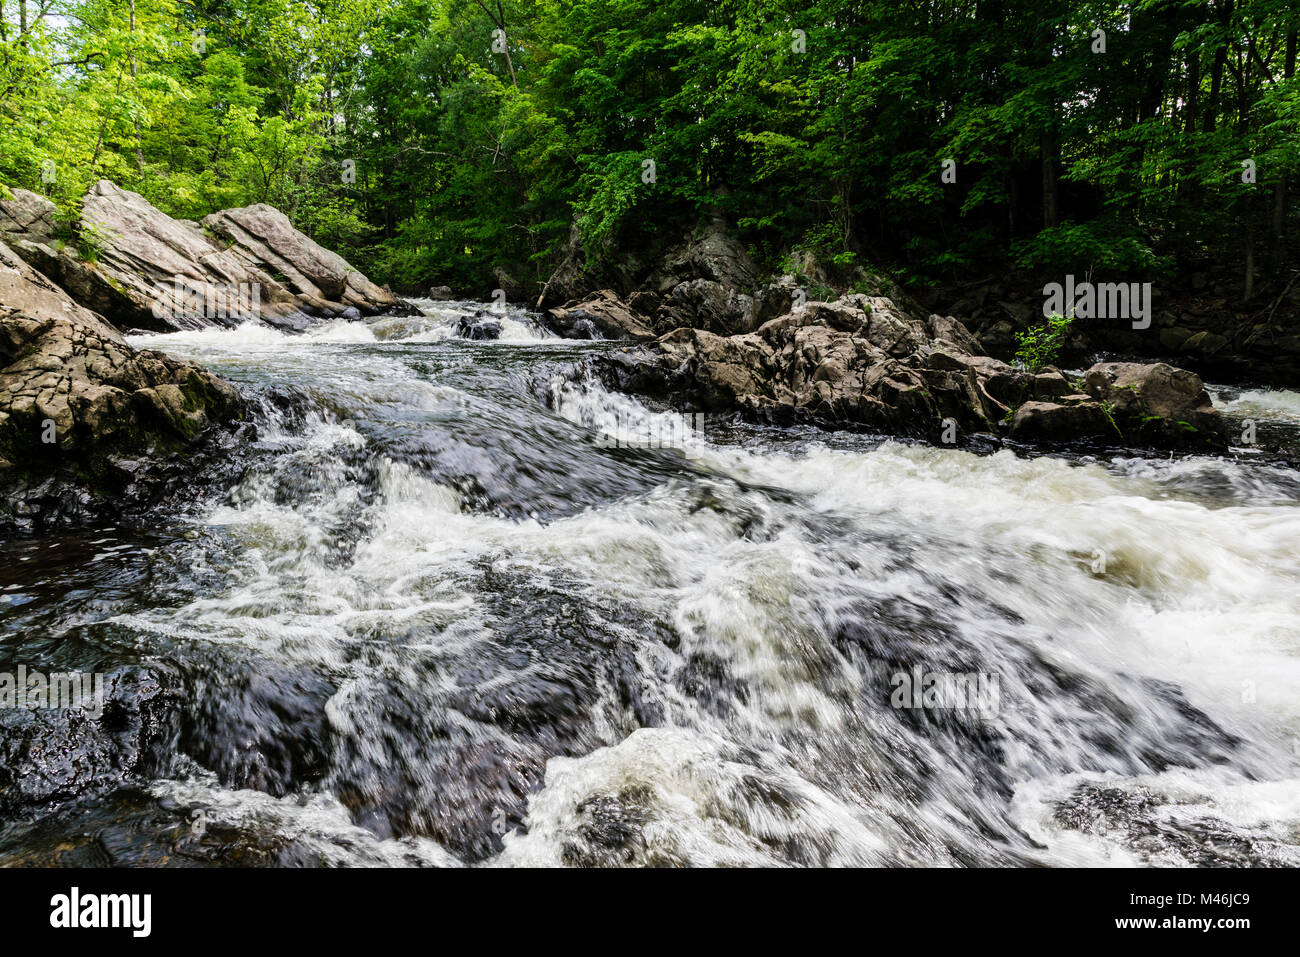 Still River   Riverton, Connecticut, USA Stock Photo